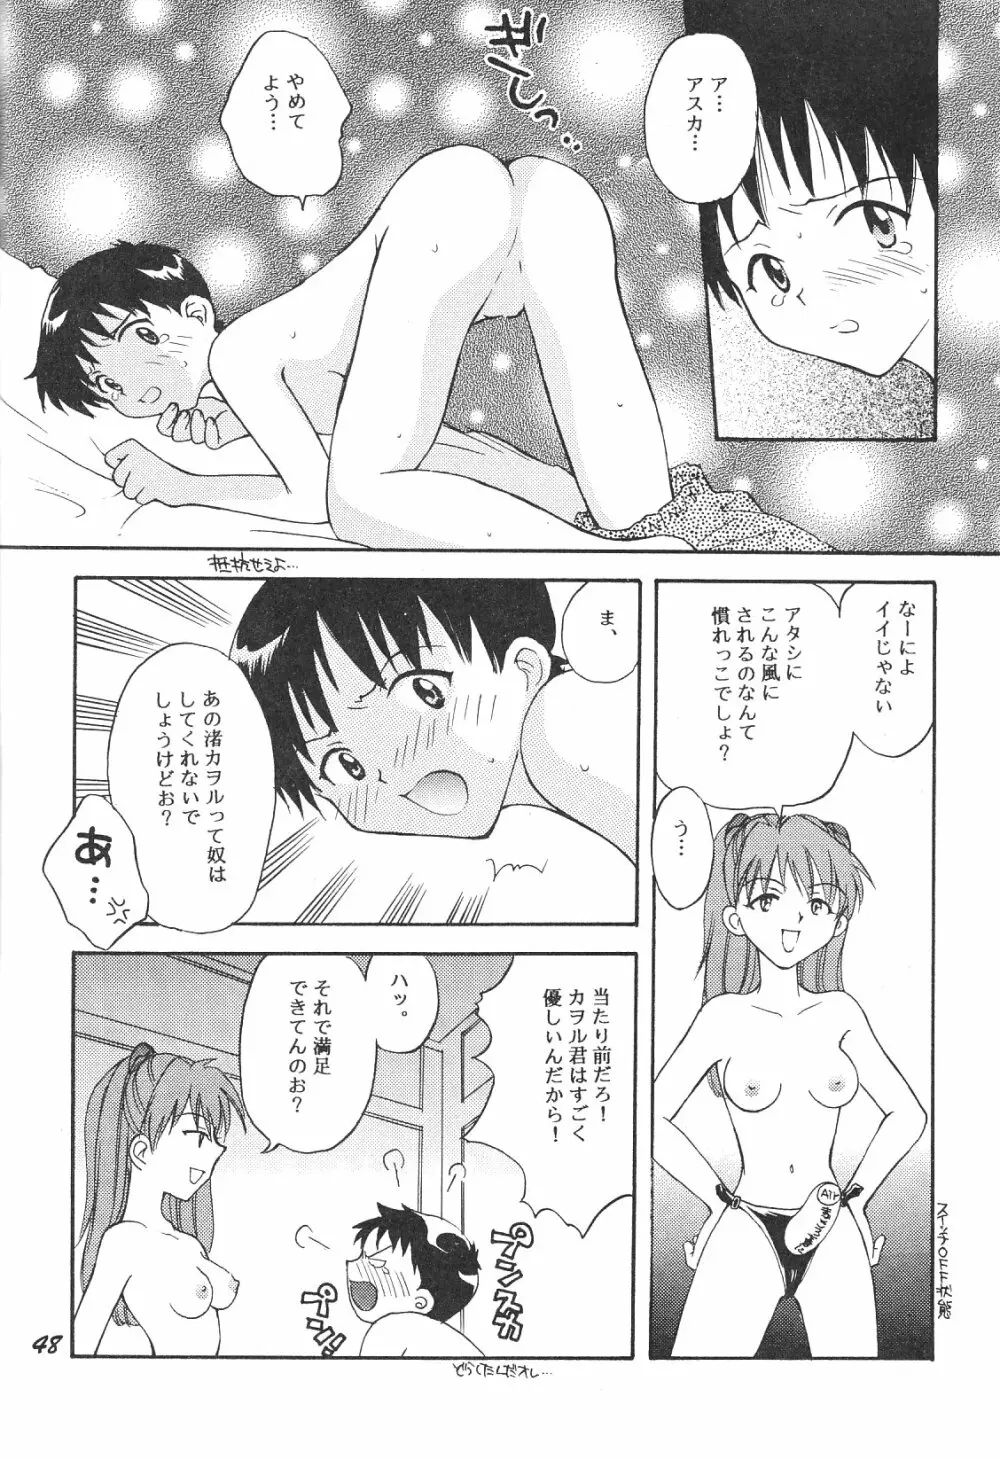 Maniac Juice 女シンジ再録集 ’96-’99 48ページ